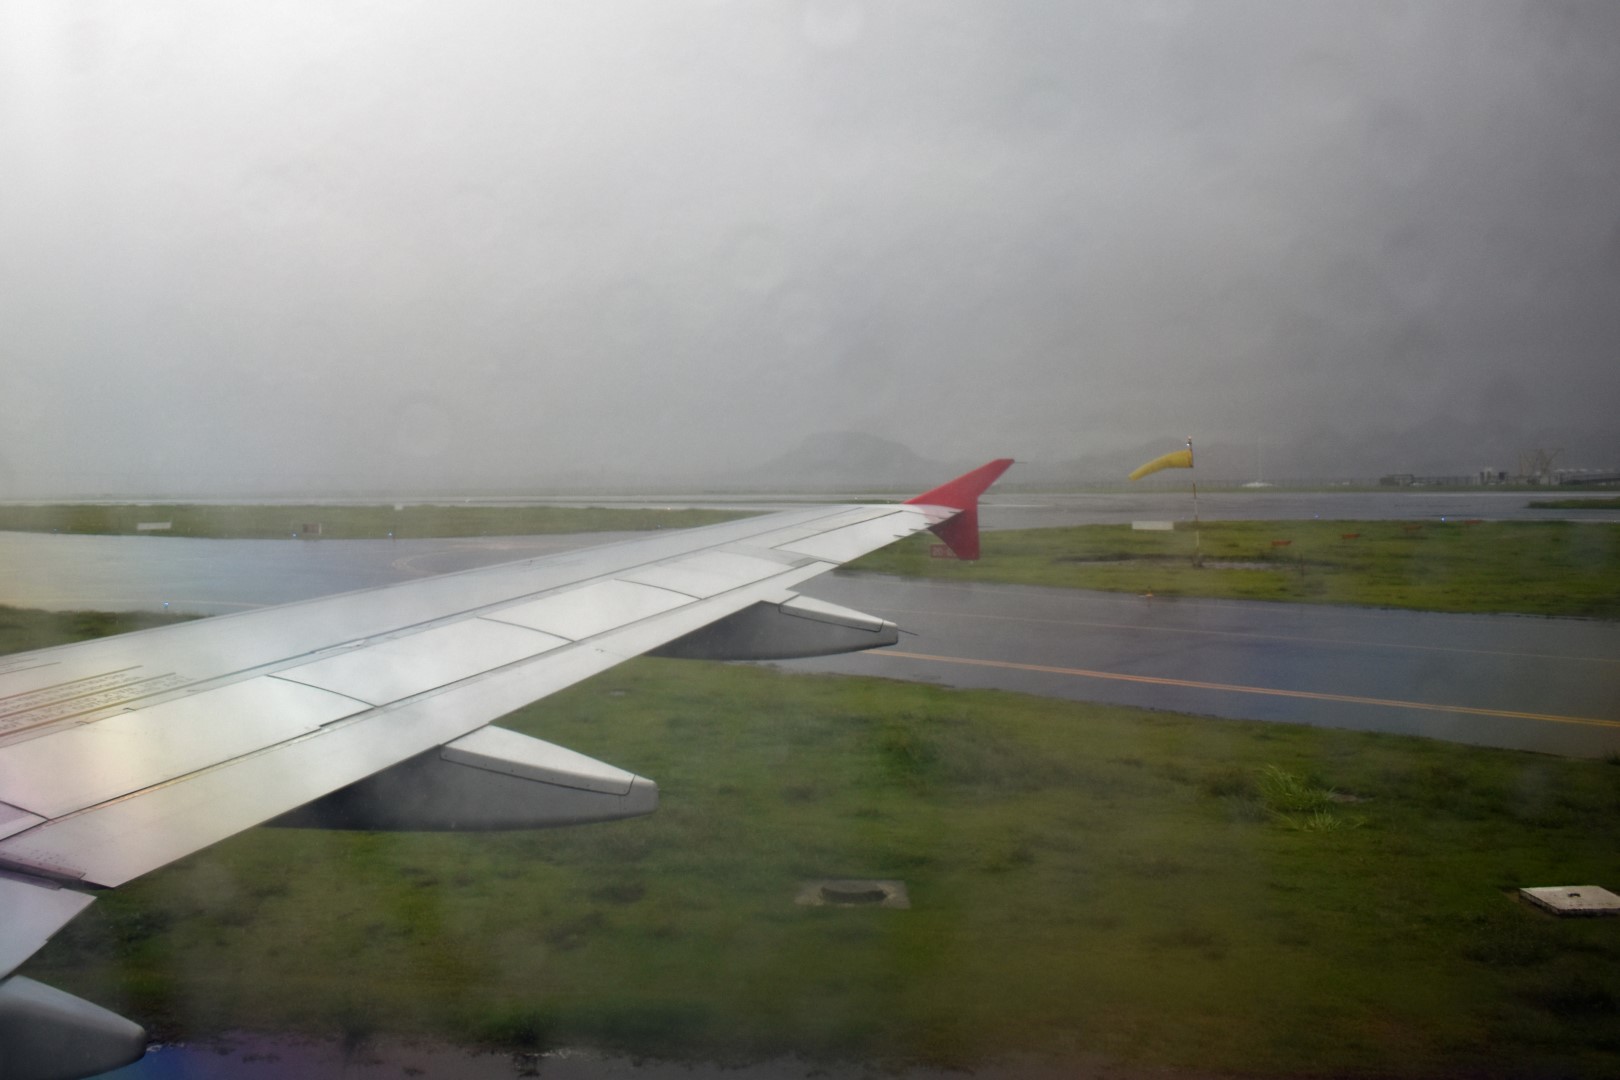 Landing in Aeroporto Rio de Janeiro RJ Santos Dumont